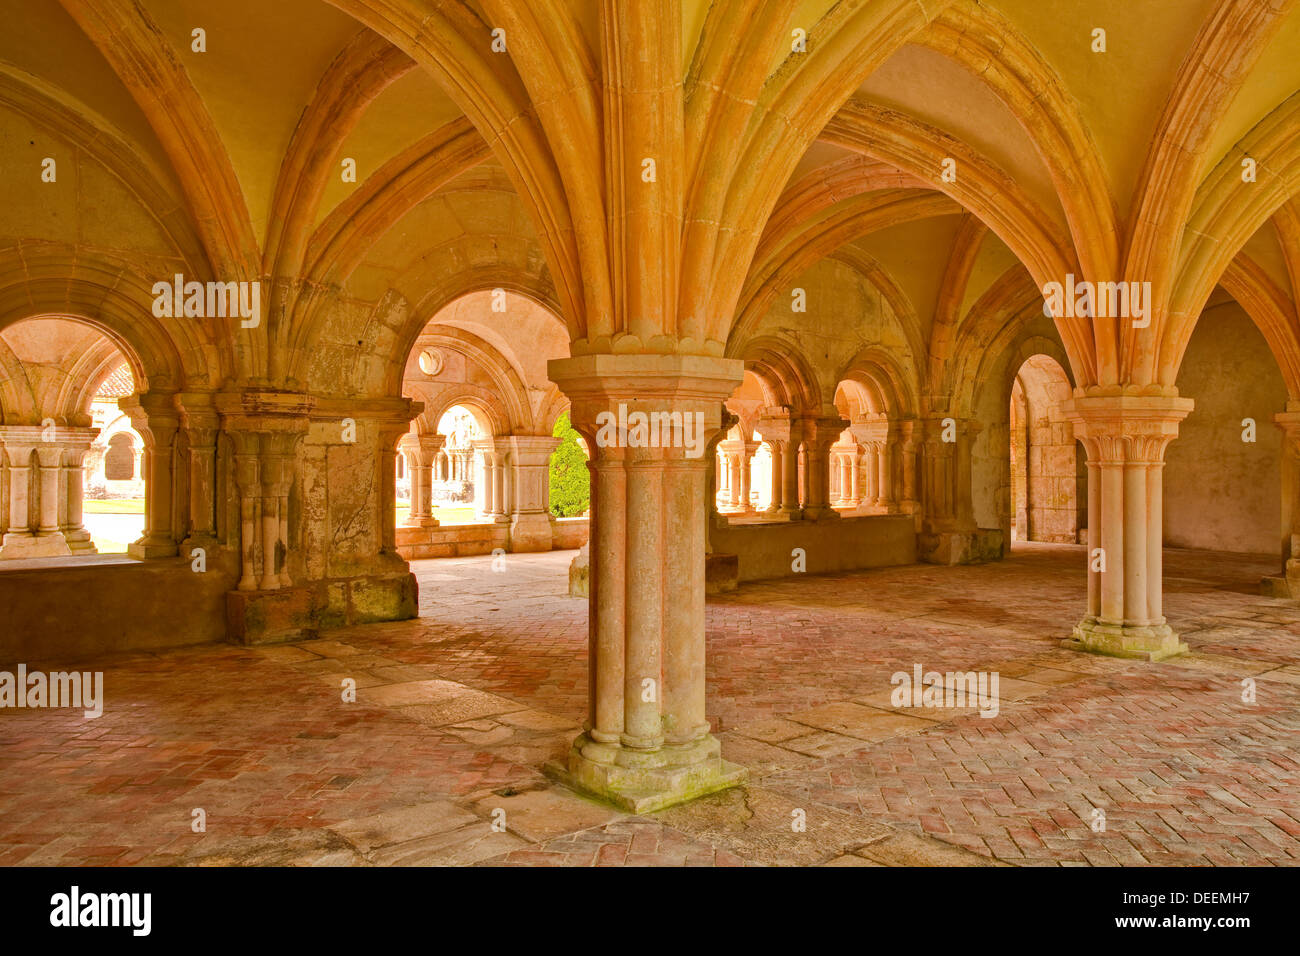 La salle capitulaire de l'abbaye de Fontenay, site classé au patrimoine mondial, la Côte d'Or, Bourgogne, France, Europe Banque D'Images